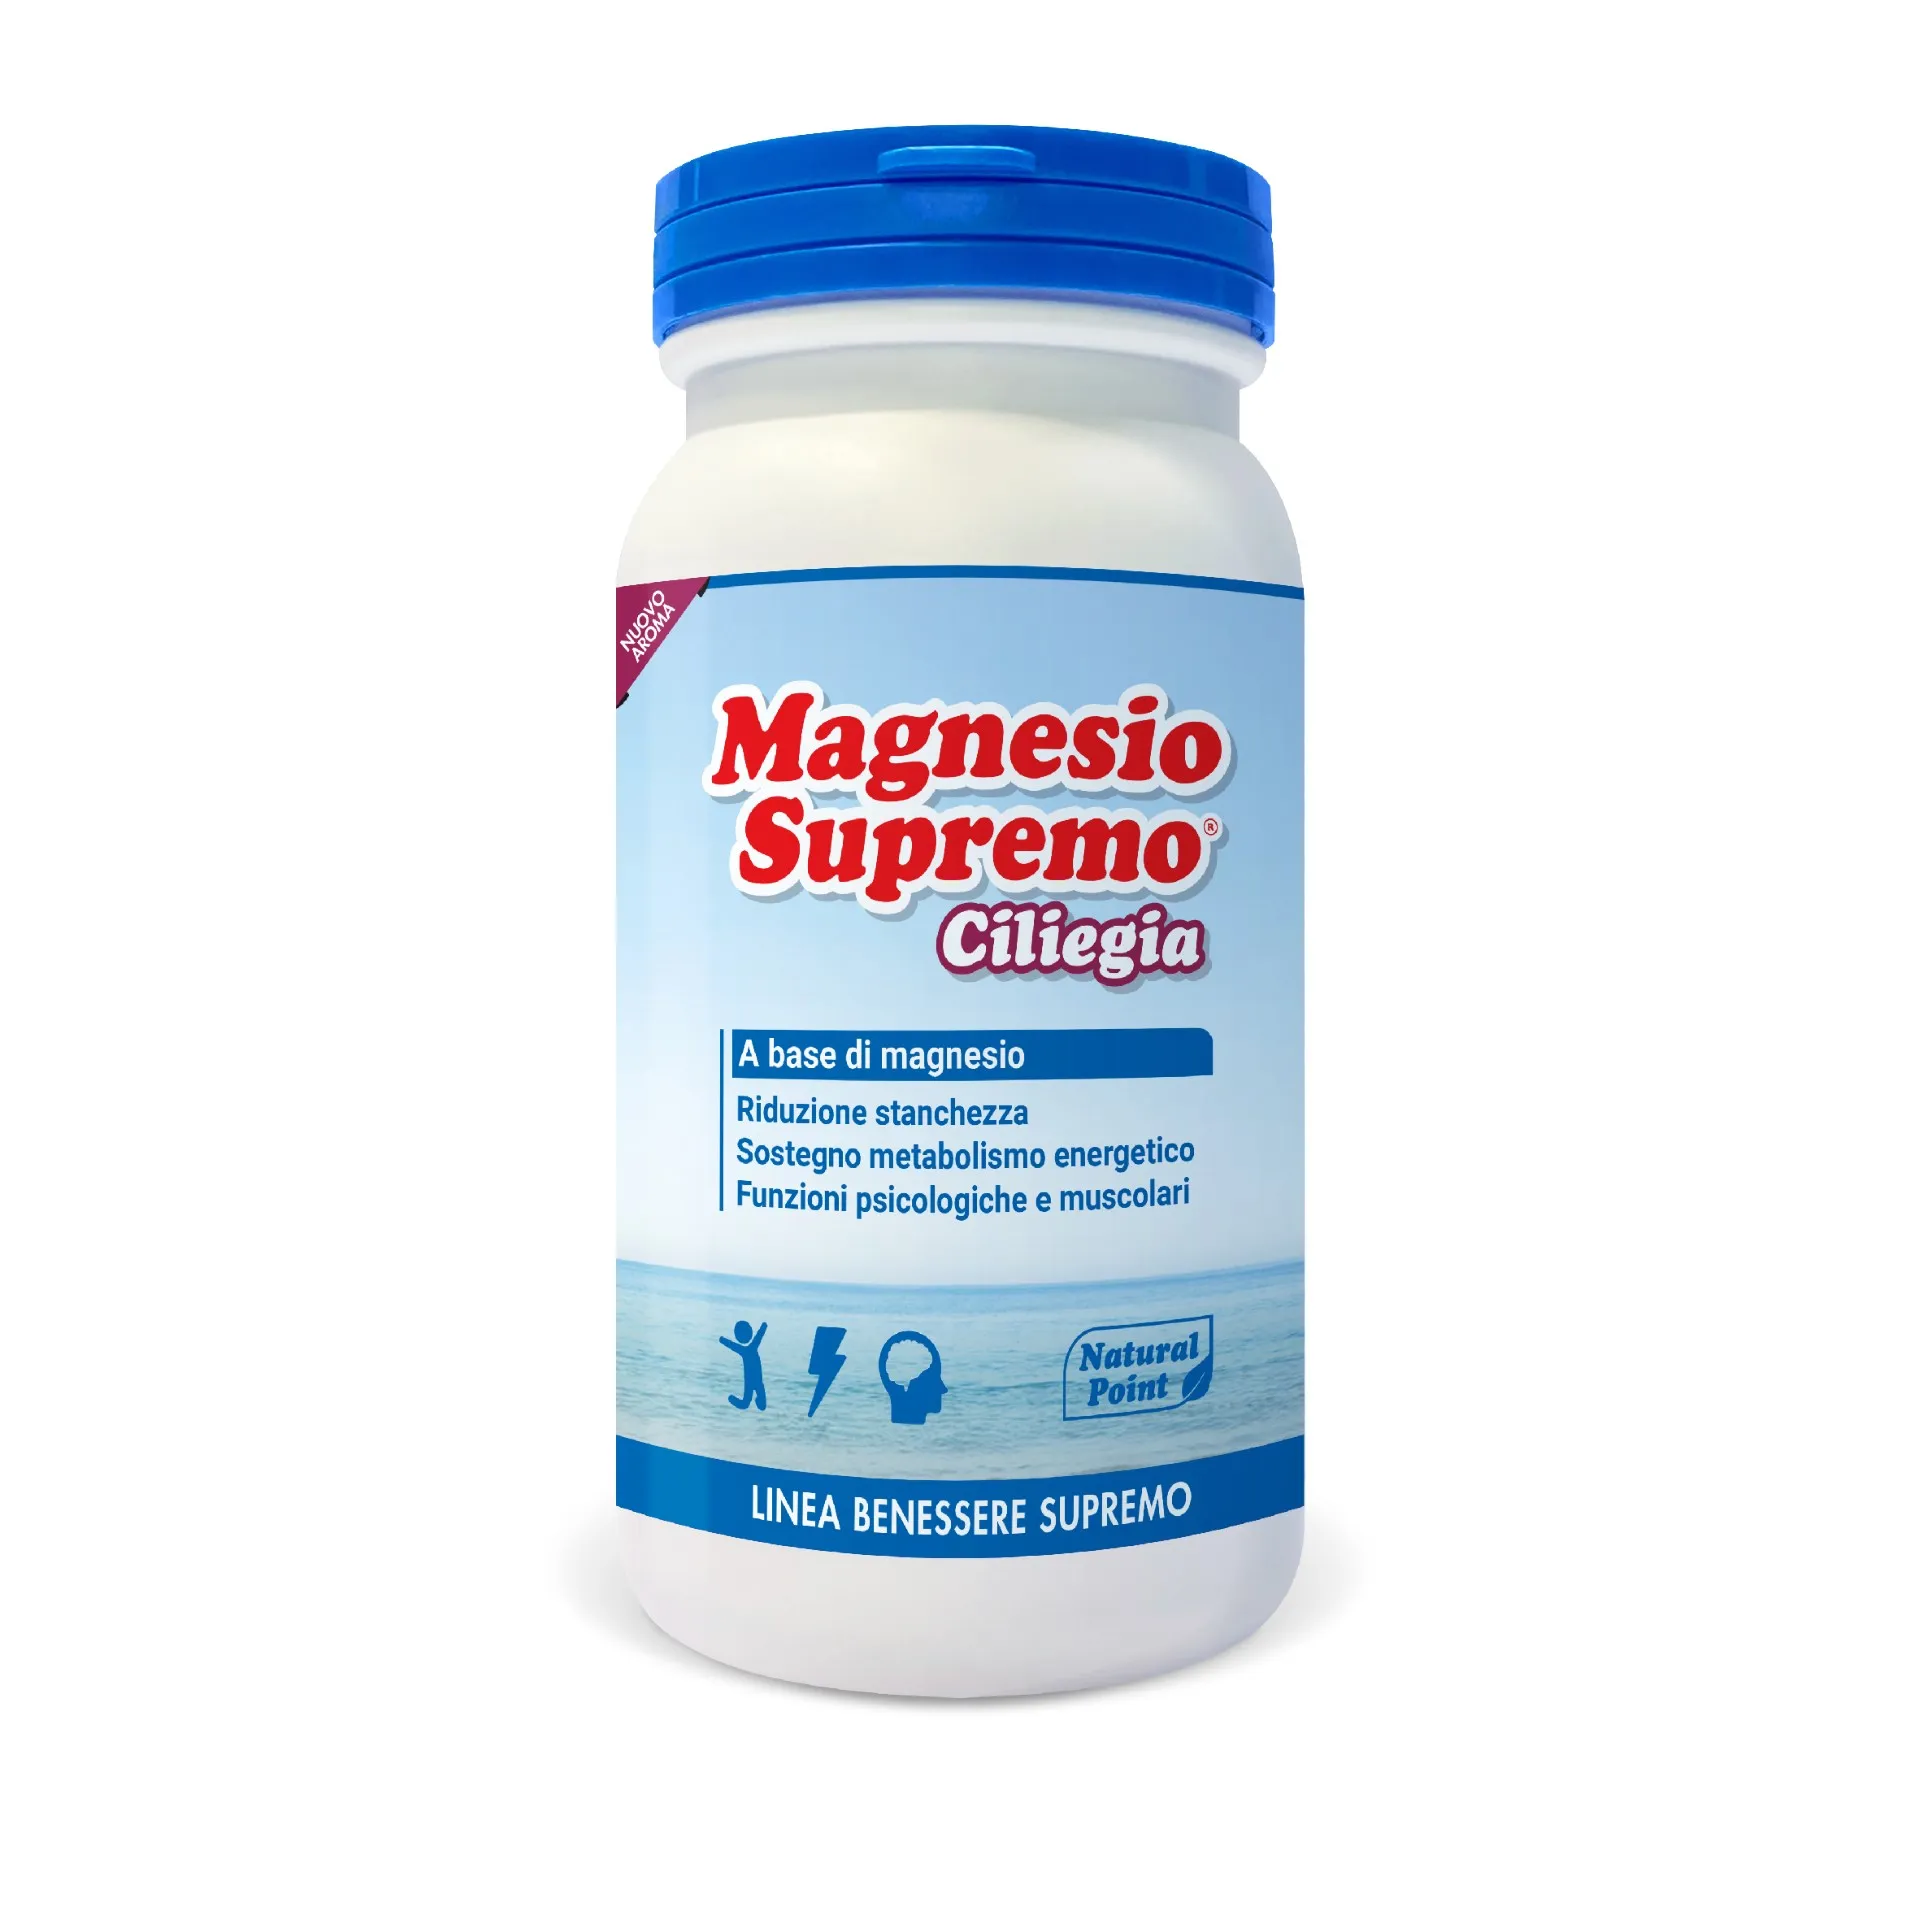 Magnesio Supremo Polvere Gusto Ciliegia 150g